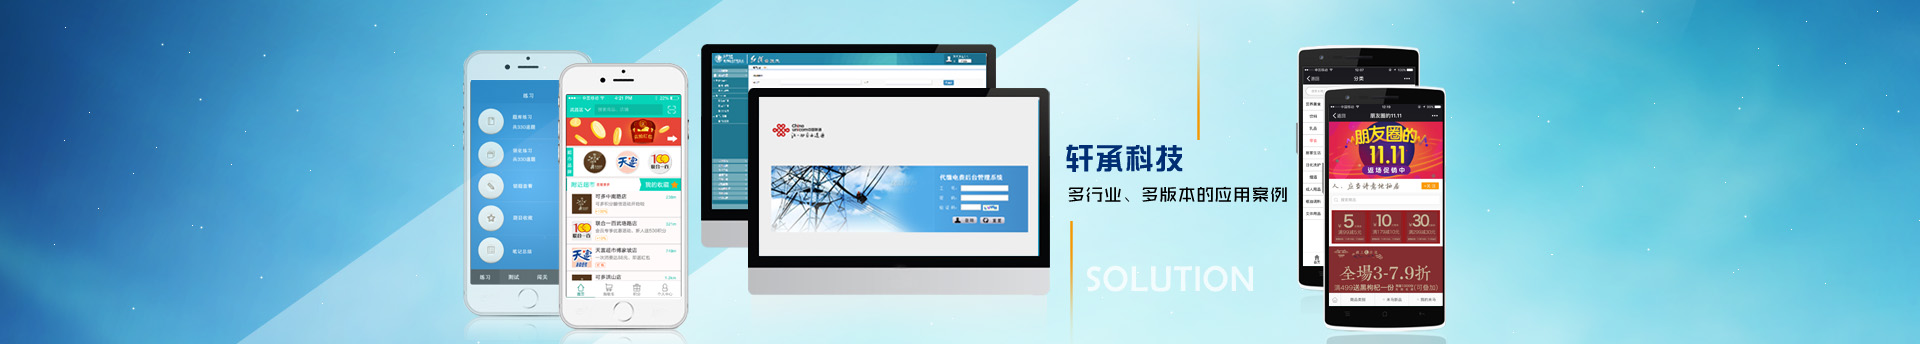 武汉软件开发-武汉网站建设-武汉APP开发-武汉微信小程序开发-武汉数据可视化开发—解决方案